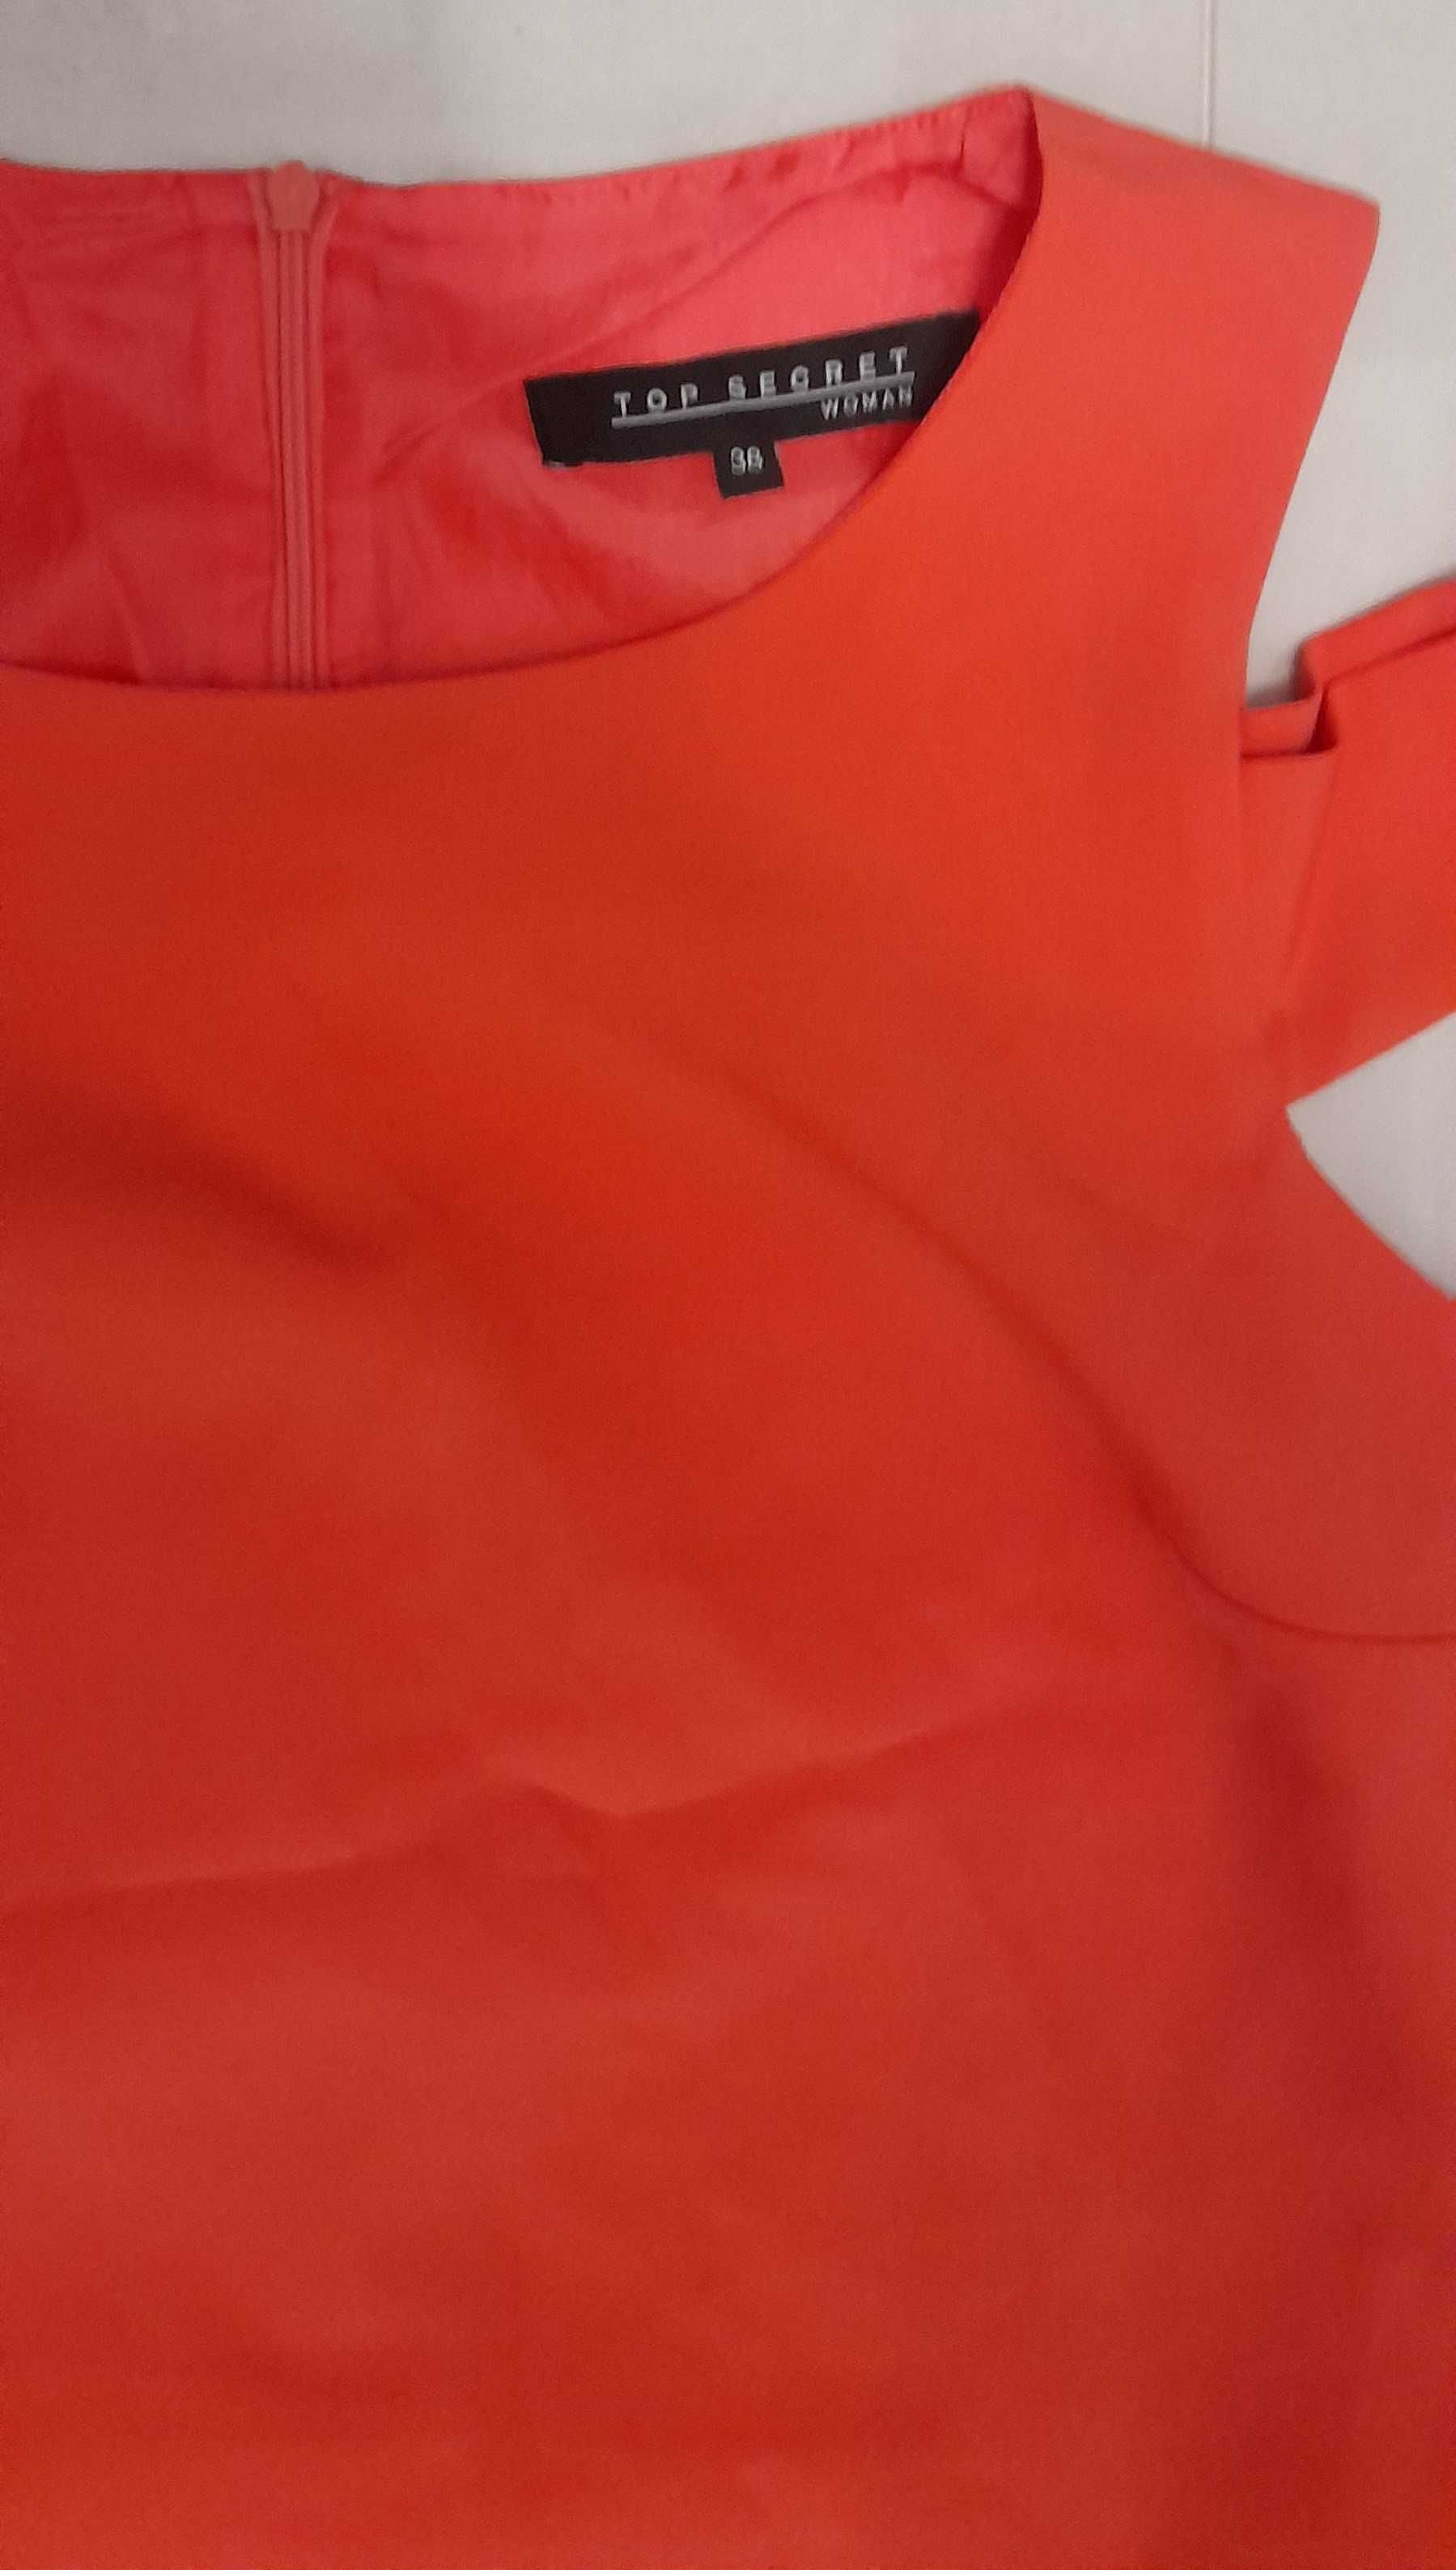 Sukienka pomarańczowa koralowa Top Secret, rozmiar 38